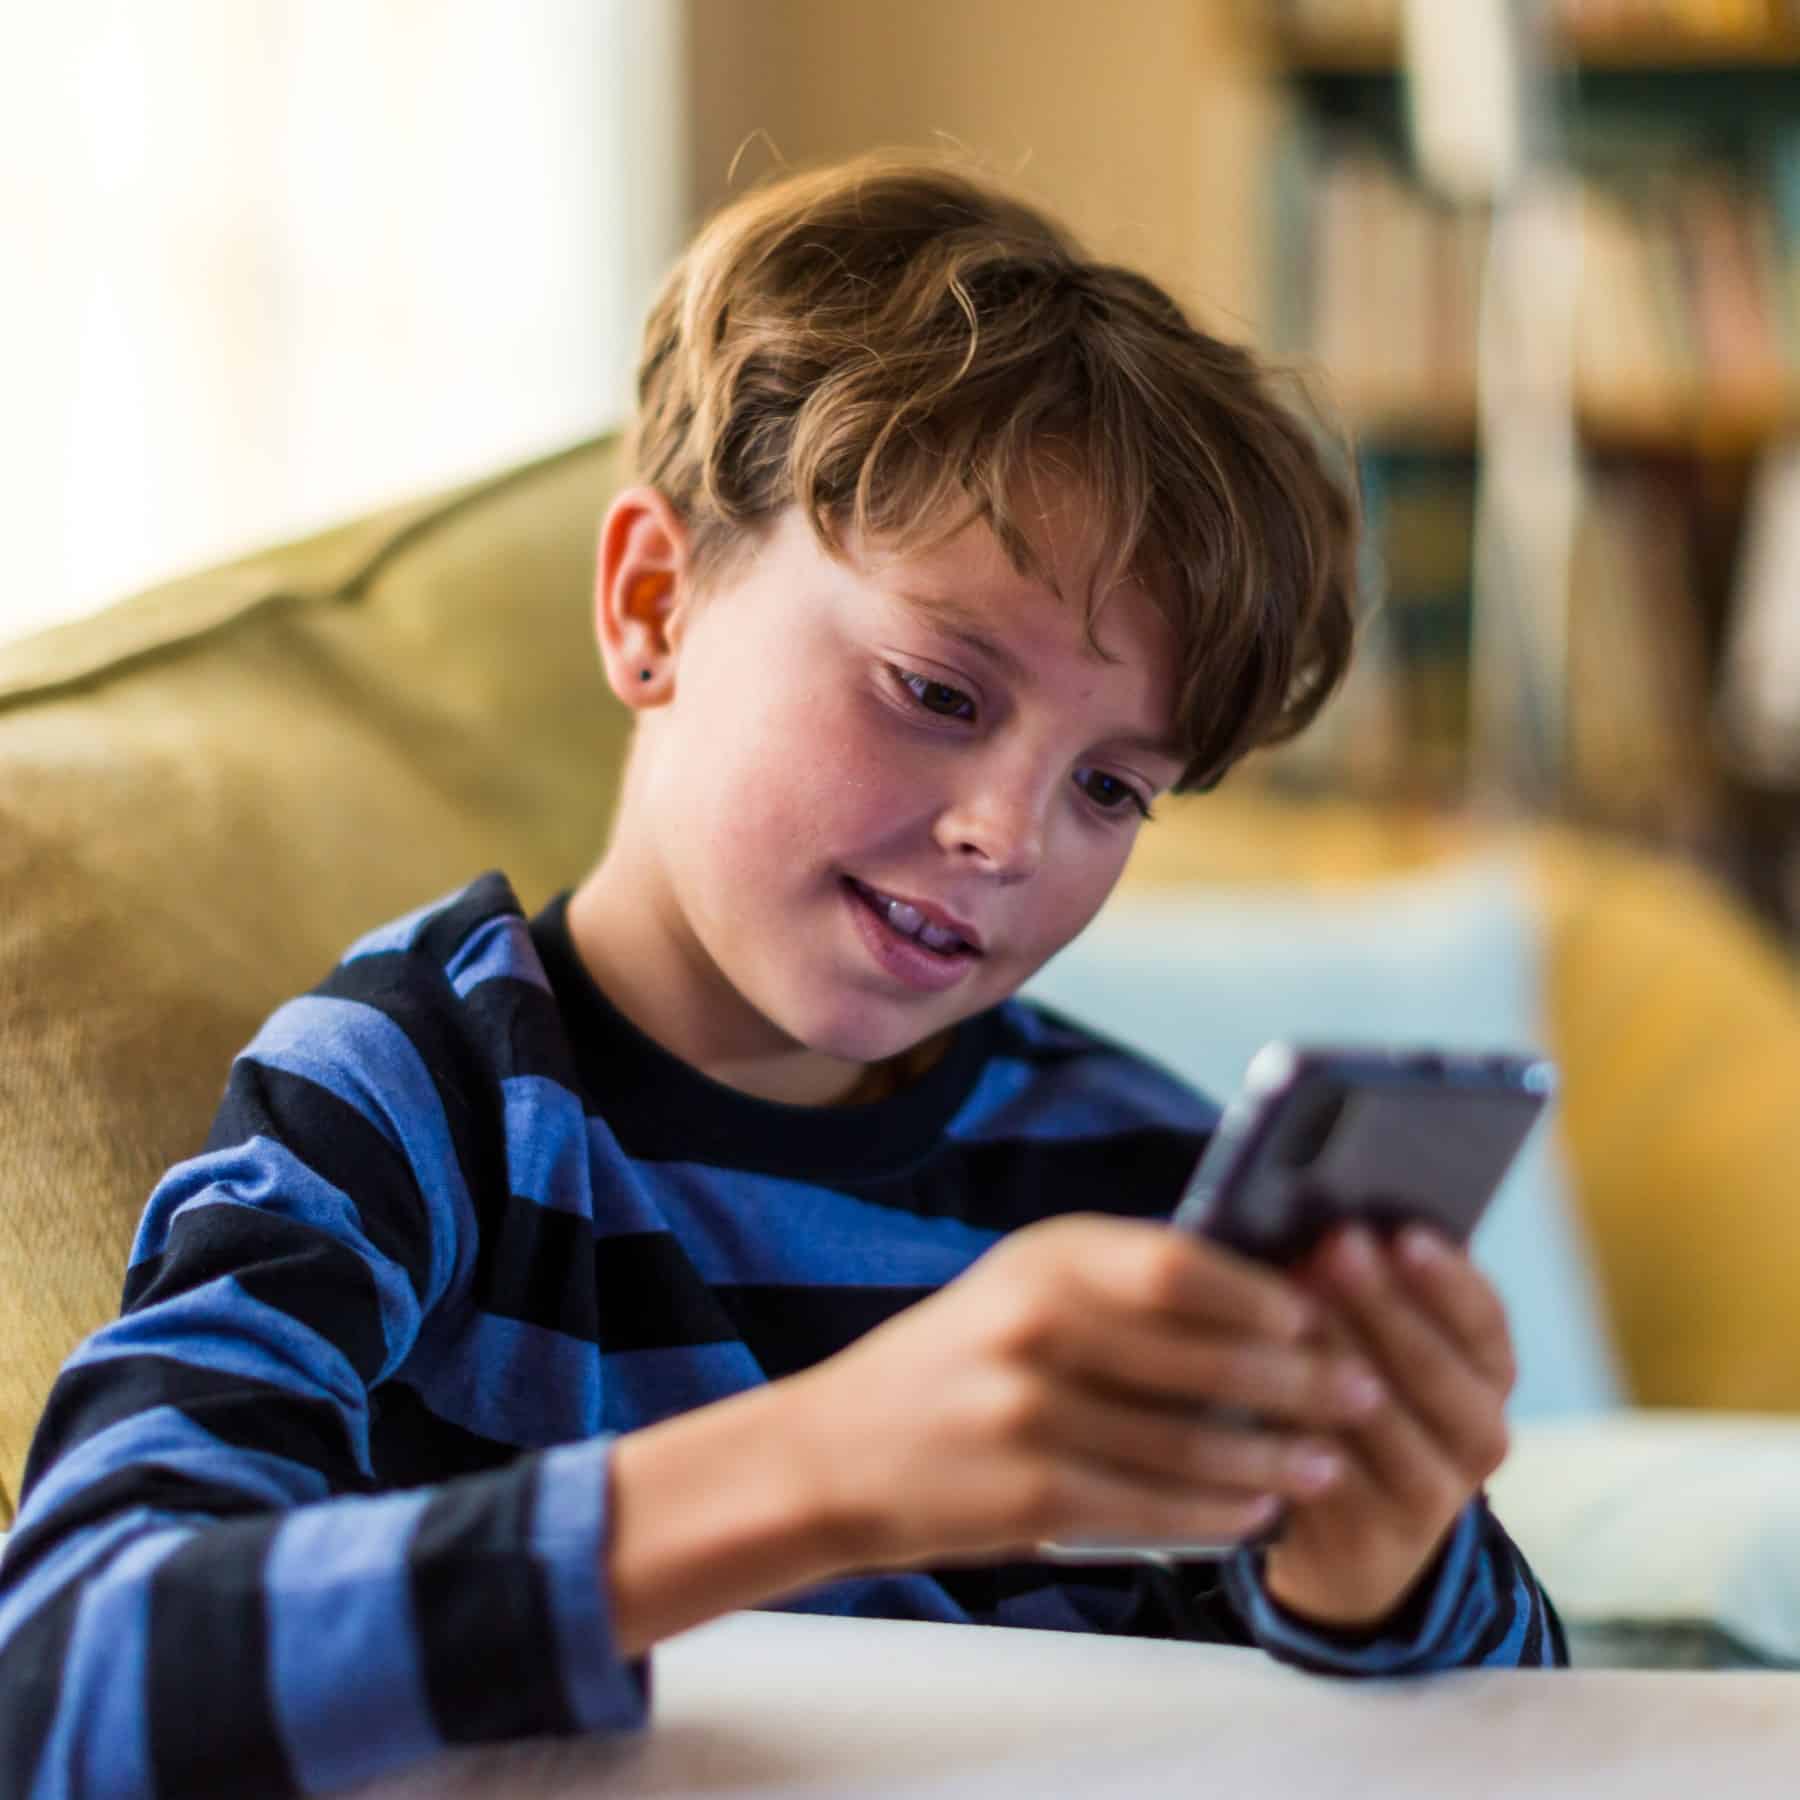 هاتف ذكي في يد طفلك: معضلة تواجه كل عائلة… فما هو العمر المناسب؟